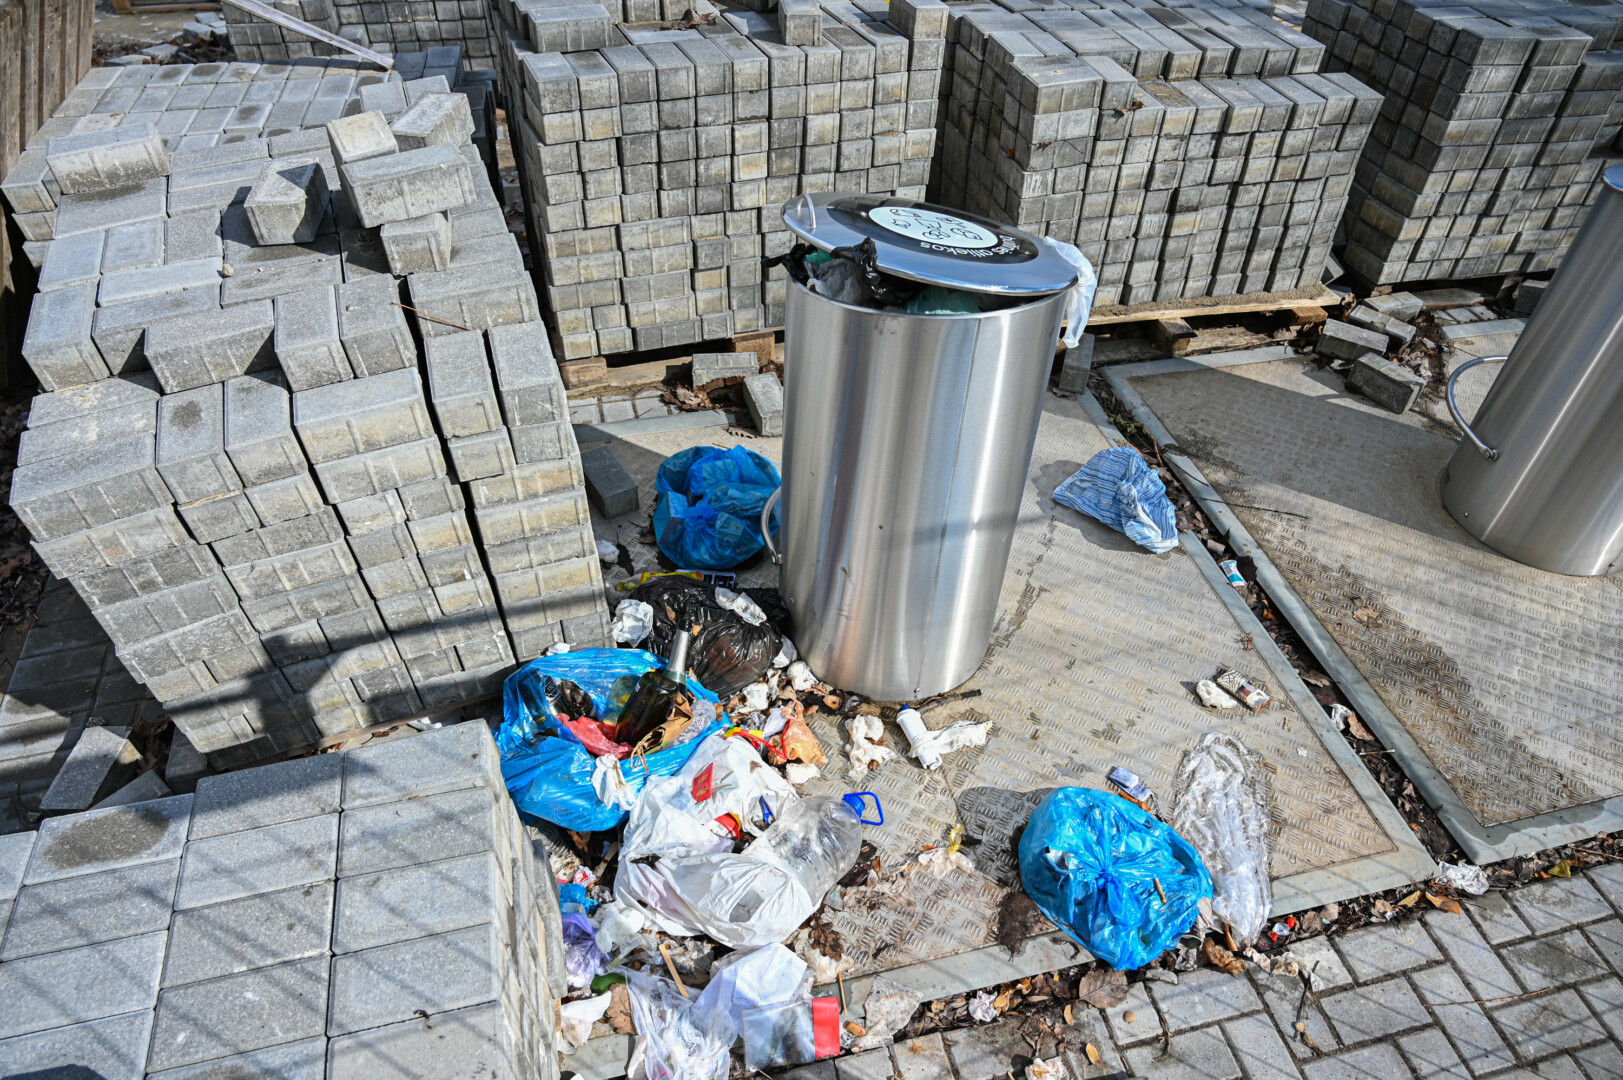 Panevėžiečiai jau prieš metus turėjo pradėti naudotis naujomis požeminėmis atliekų aikštelėmis, kurios iki šiol tebėra aptvertos apsaugine juosta.